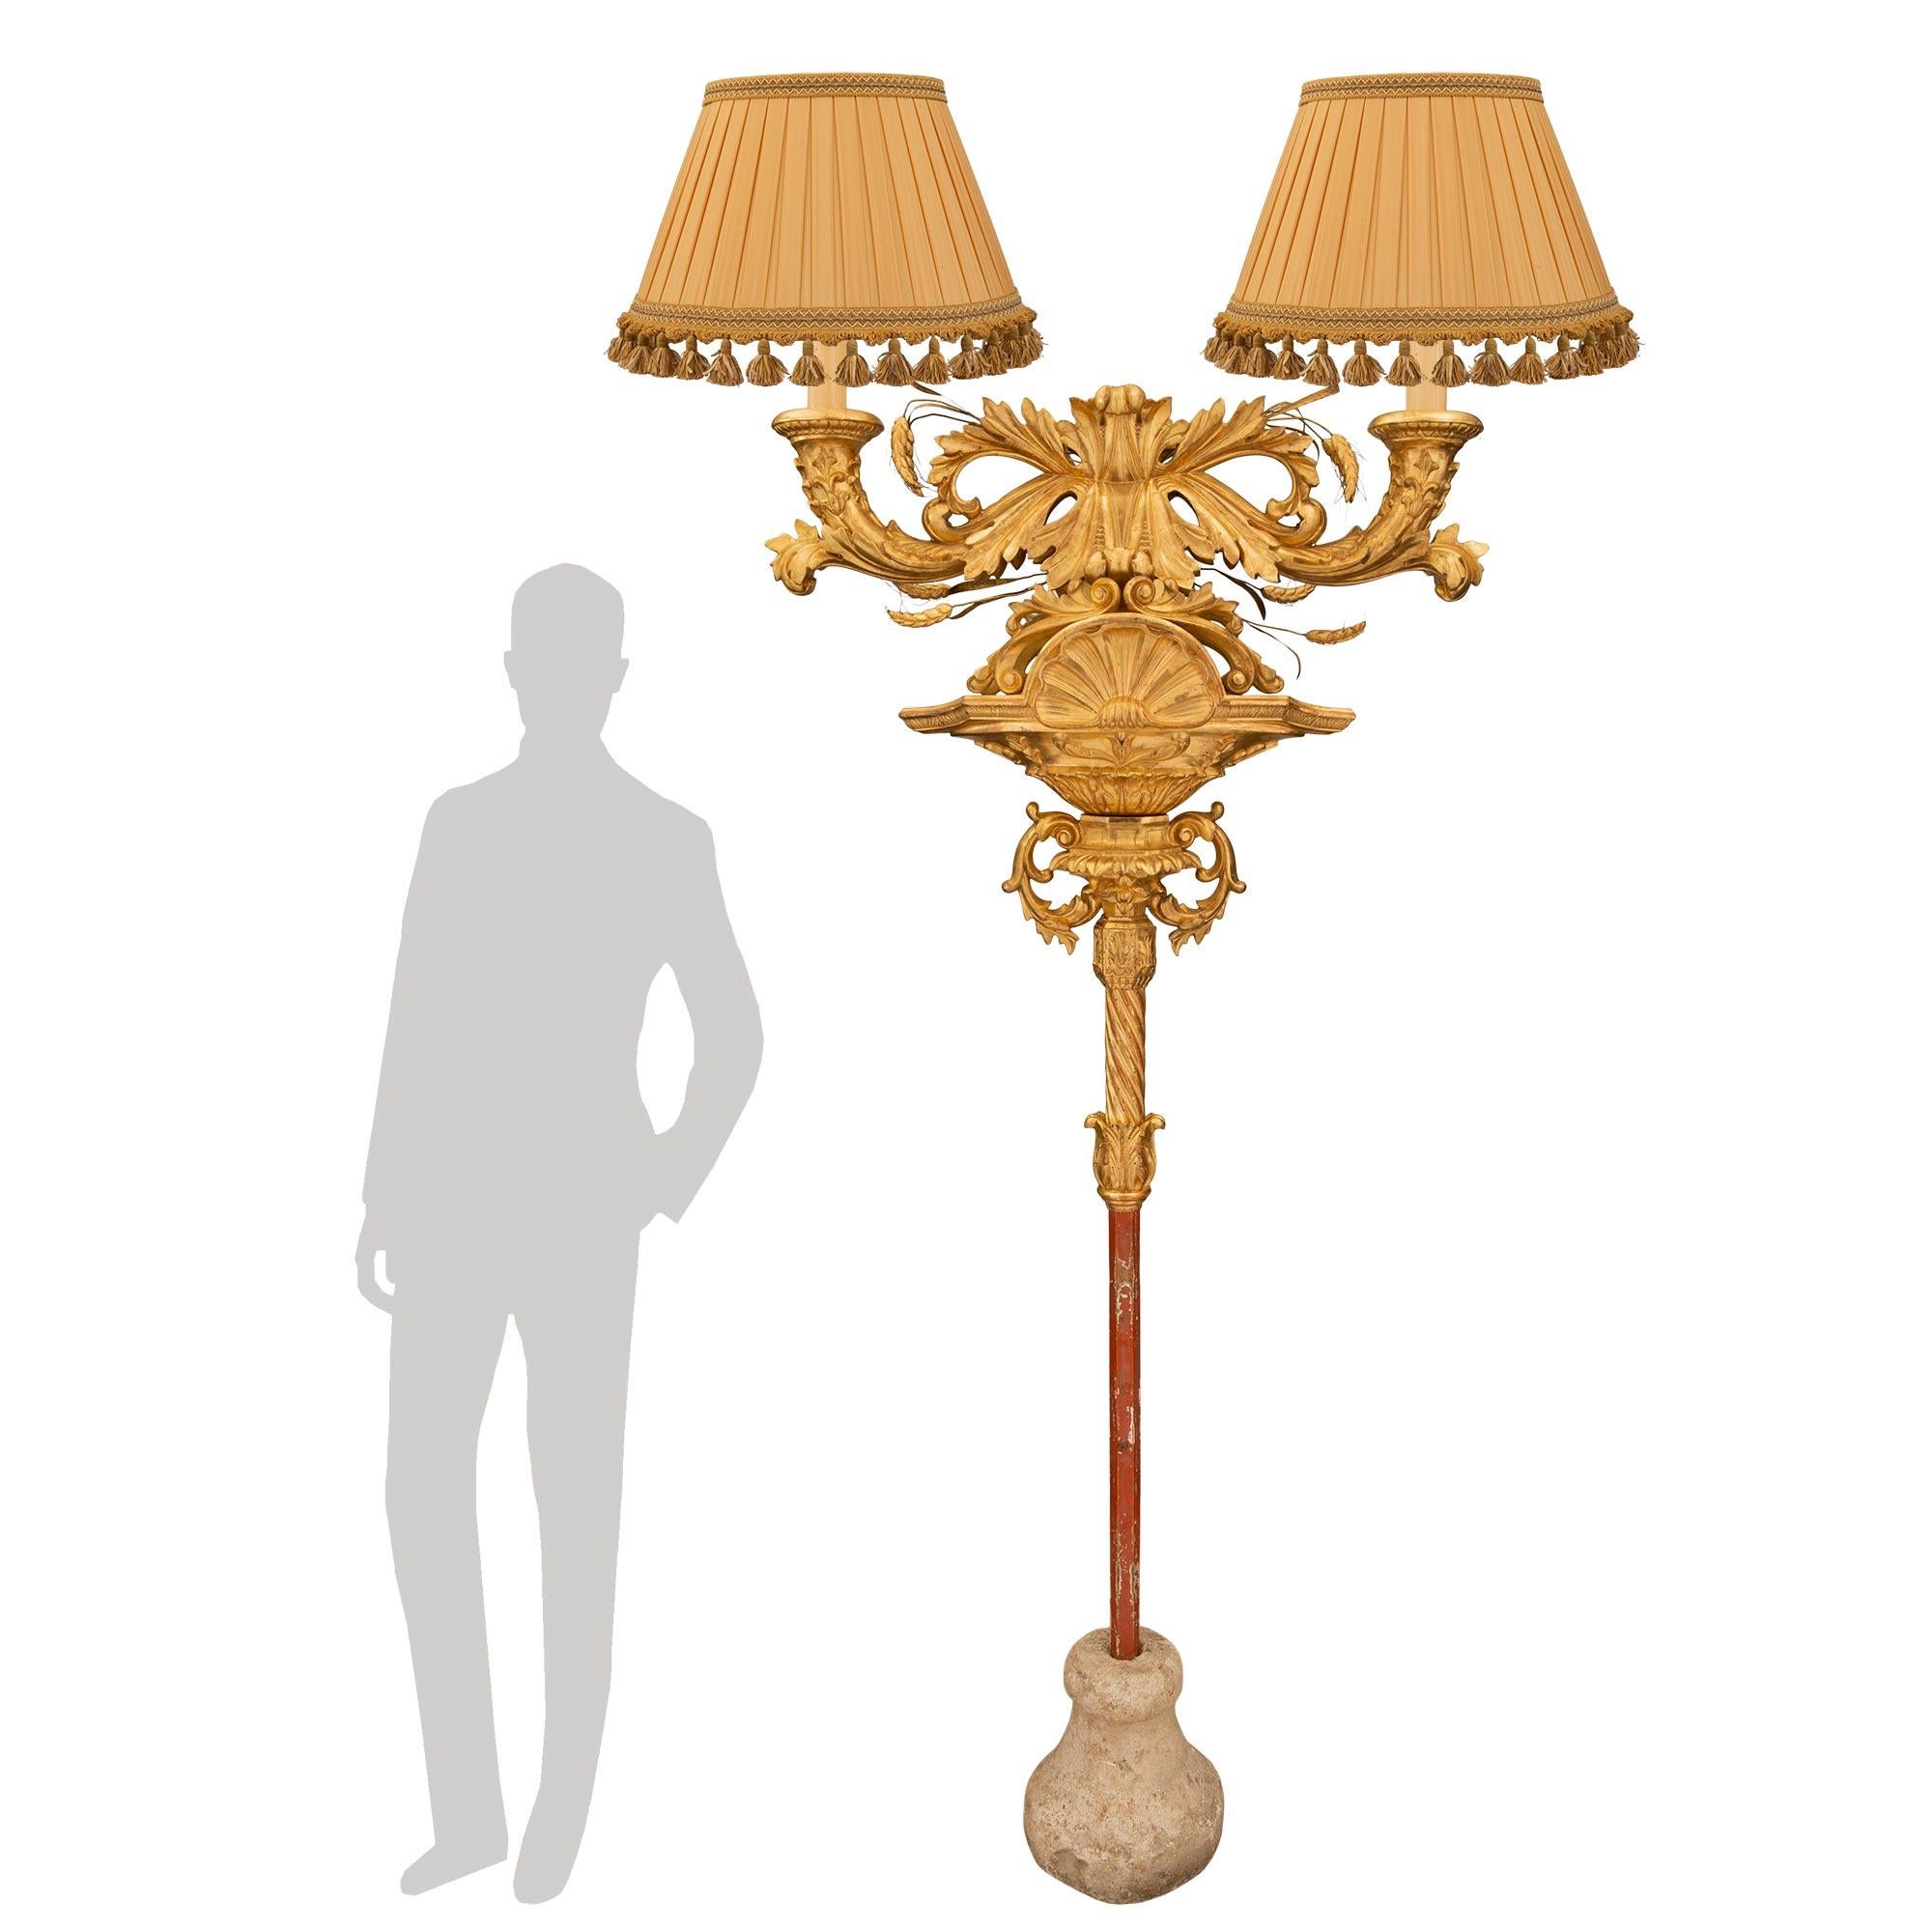 Un monumental lampadaire italien en bois doré du début du XIXe siècle. La lampe est soutenue par la base originale en pierre sous le fut patiné couleur sang de boeuf. Le fut se poursuit avec une feuille d'acanthe en bois doré et un motif torsadé